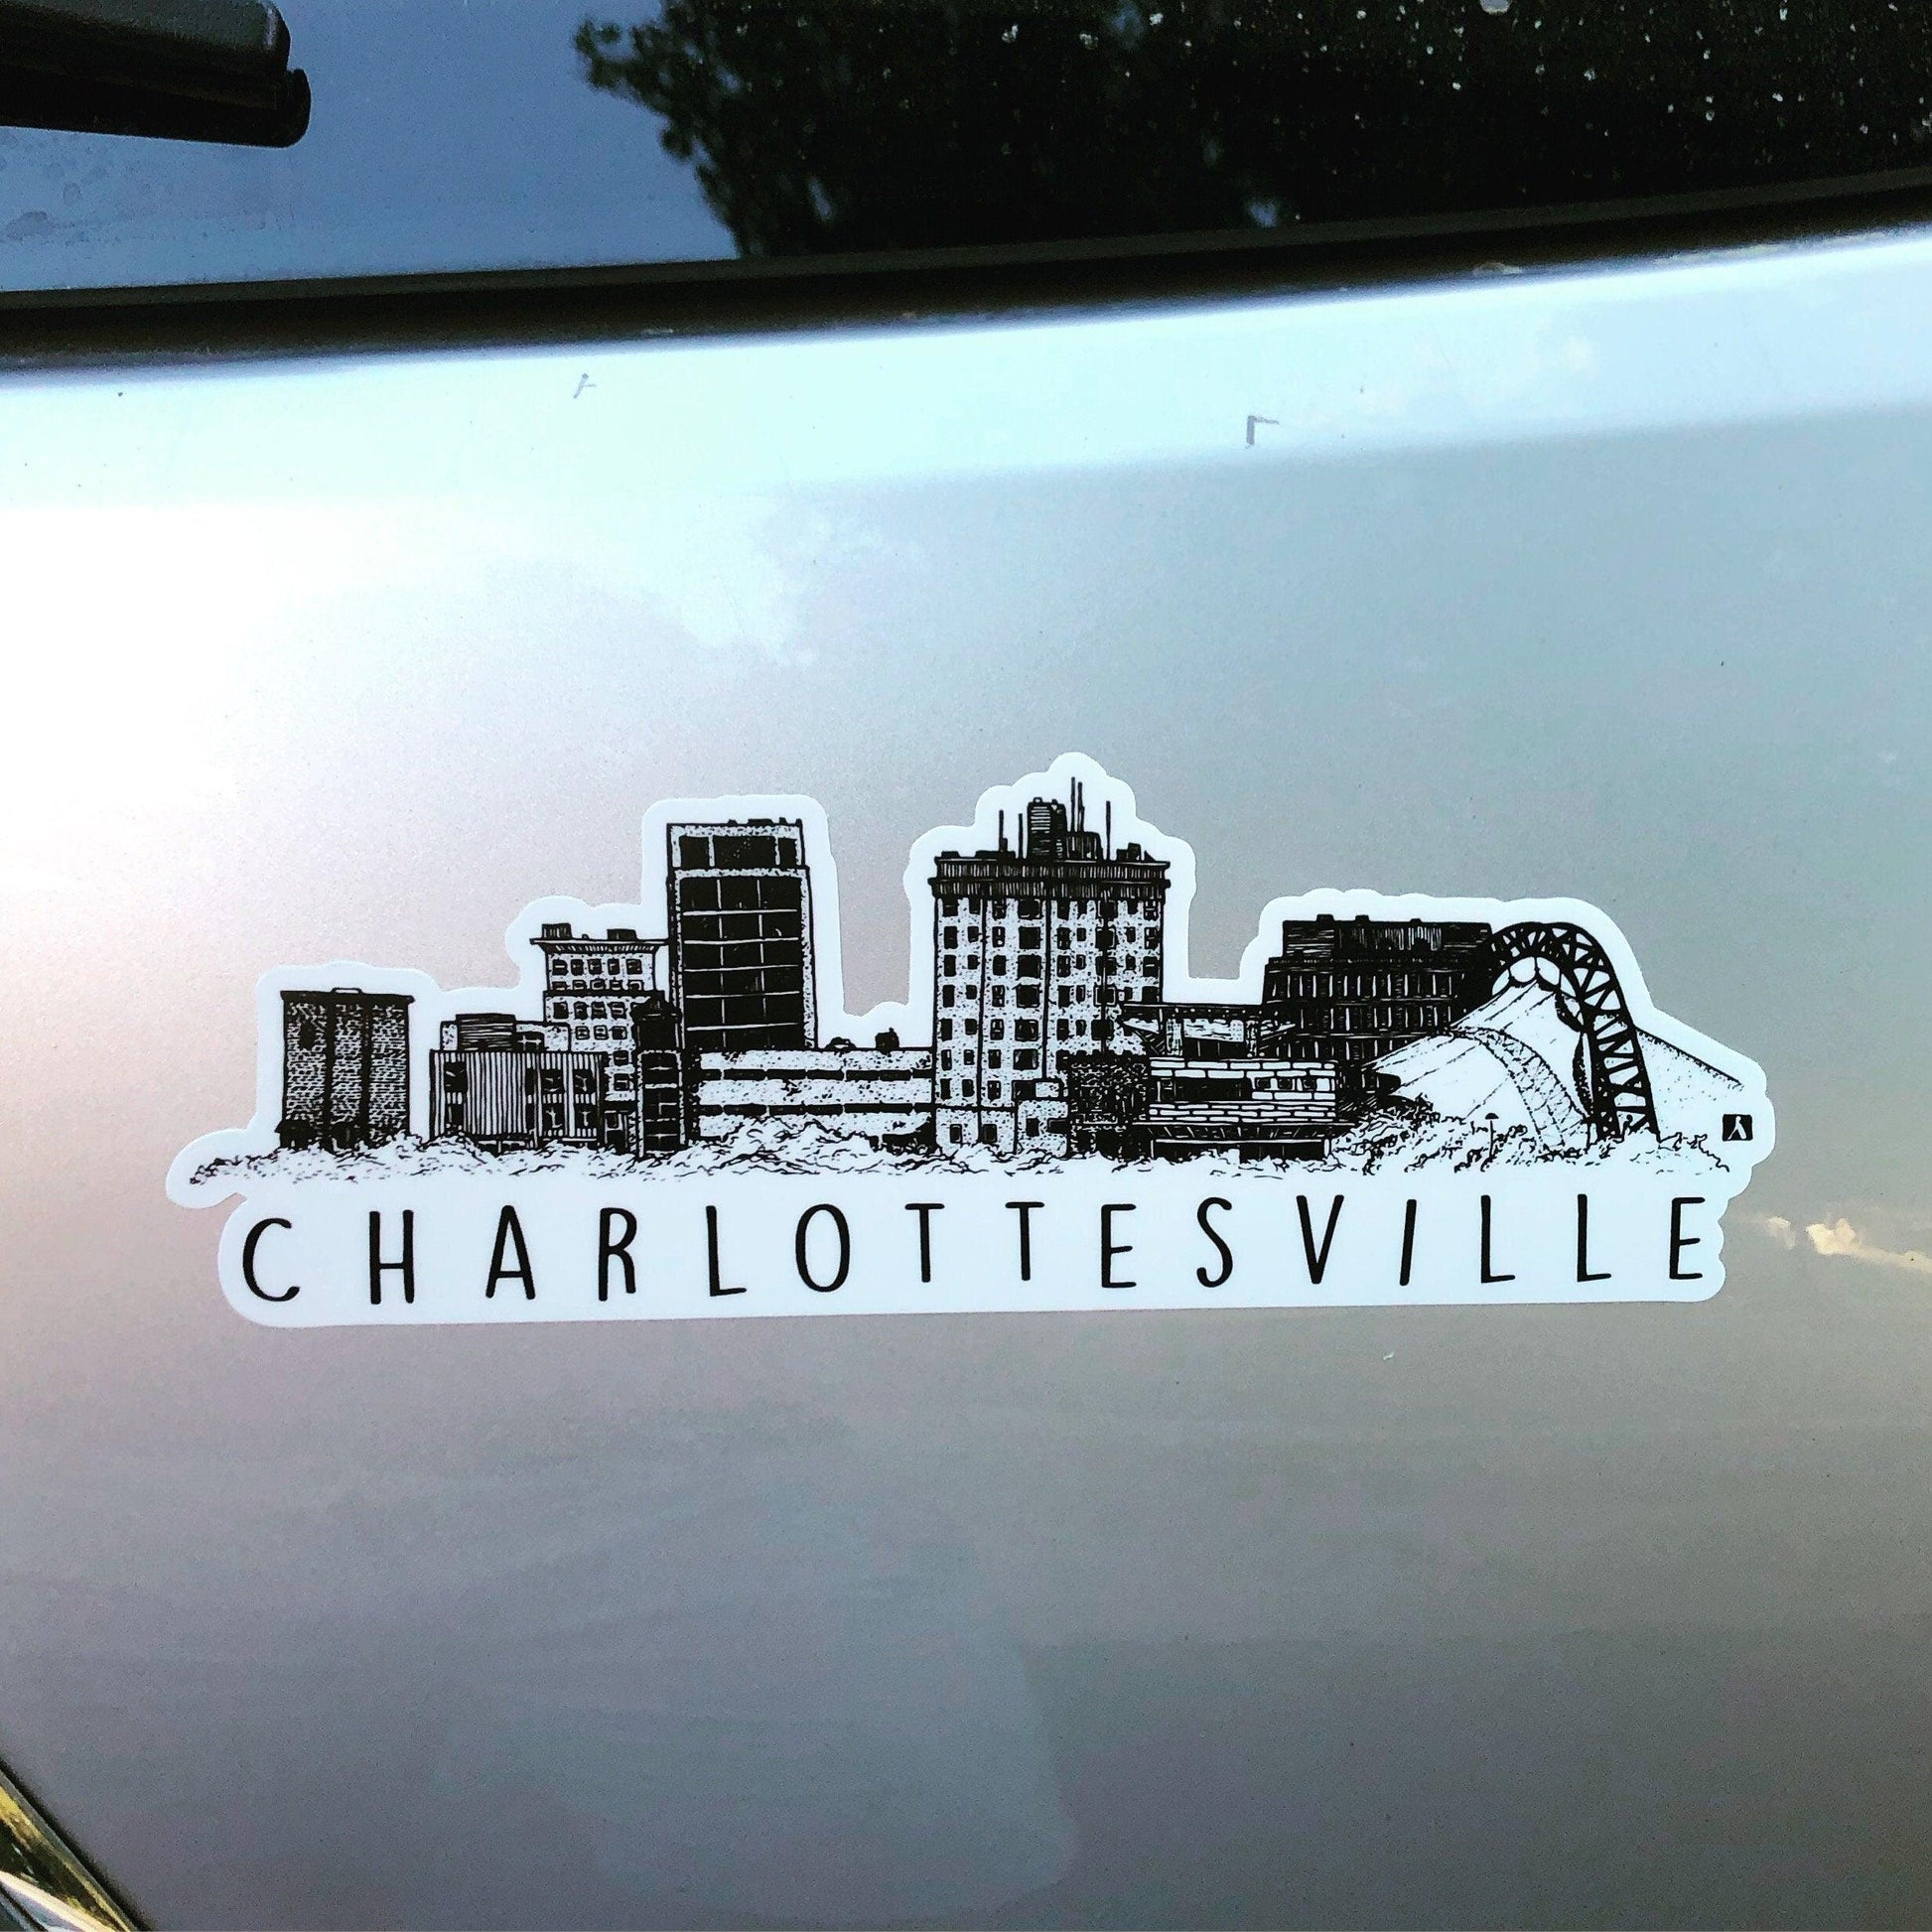 BellavanceInk: Charlottesville City Vinyl Sticker With Skyline View Pen and Ink Illustration - BellavanceInk